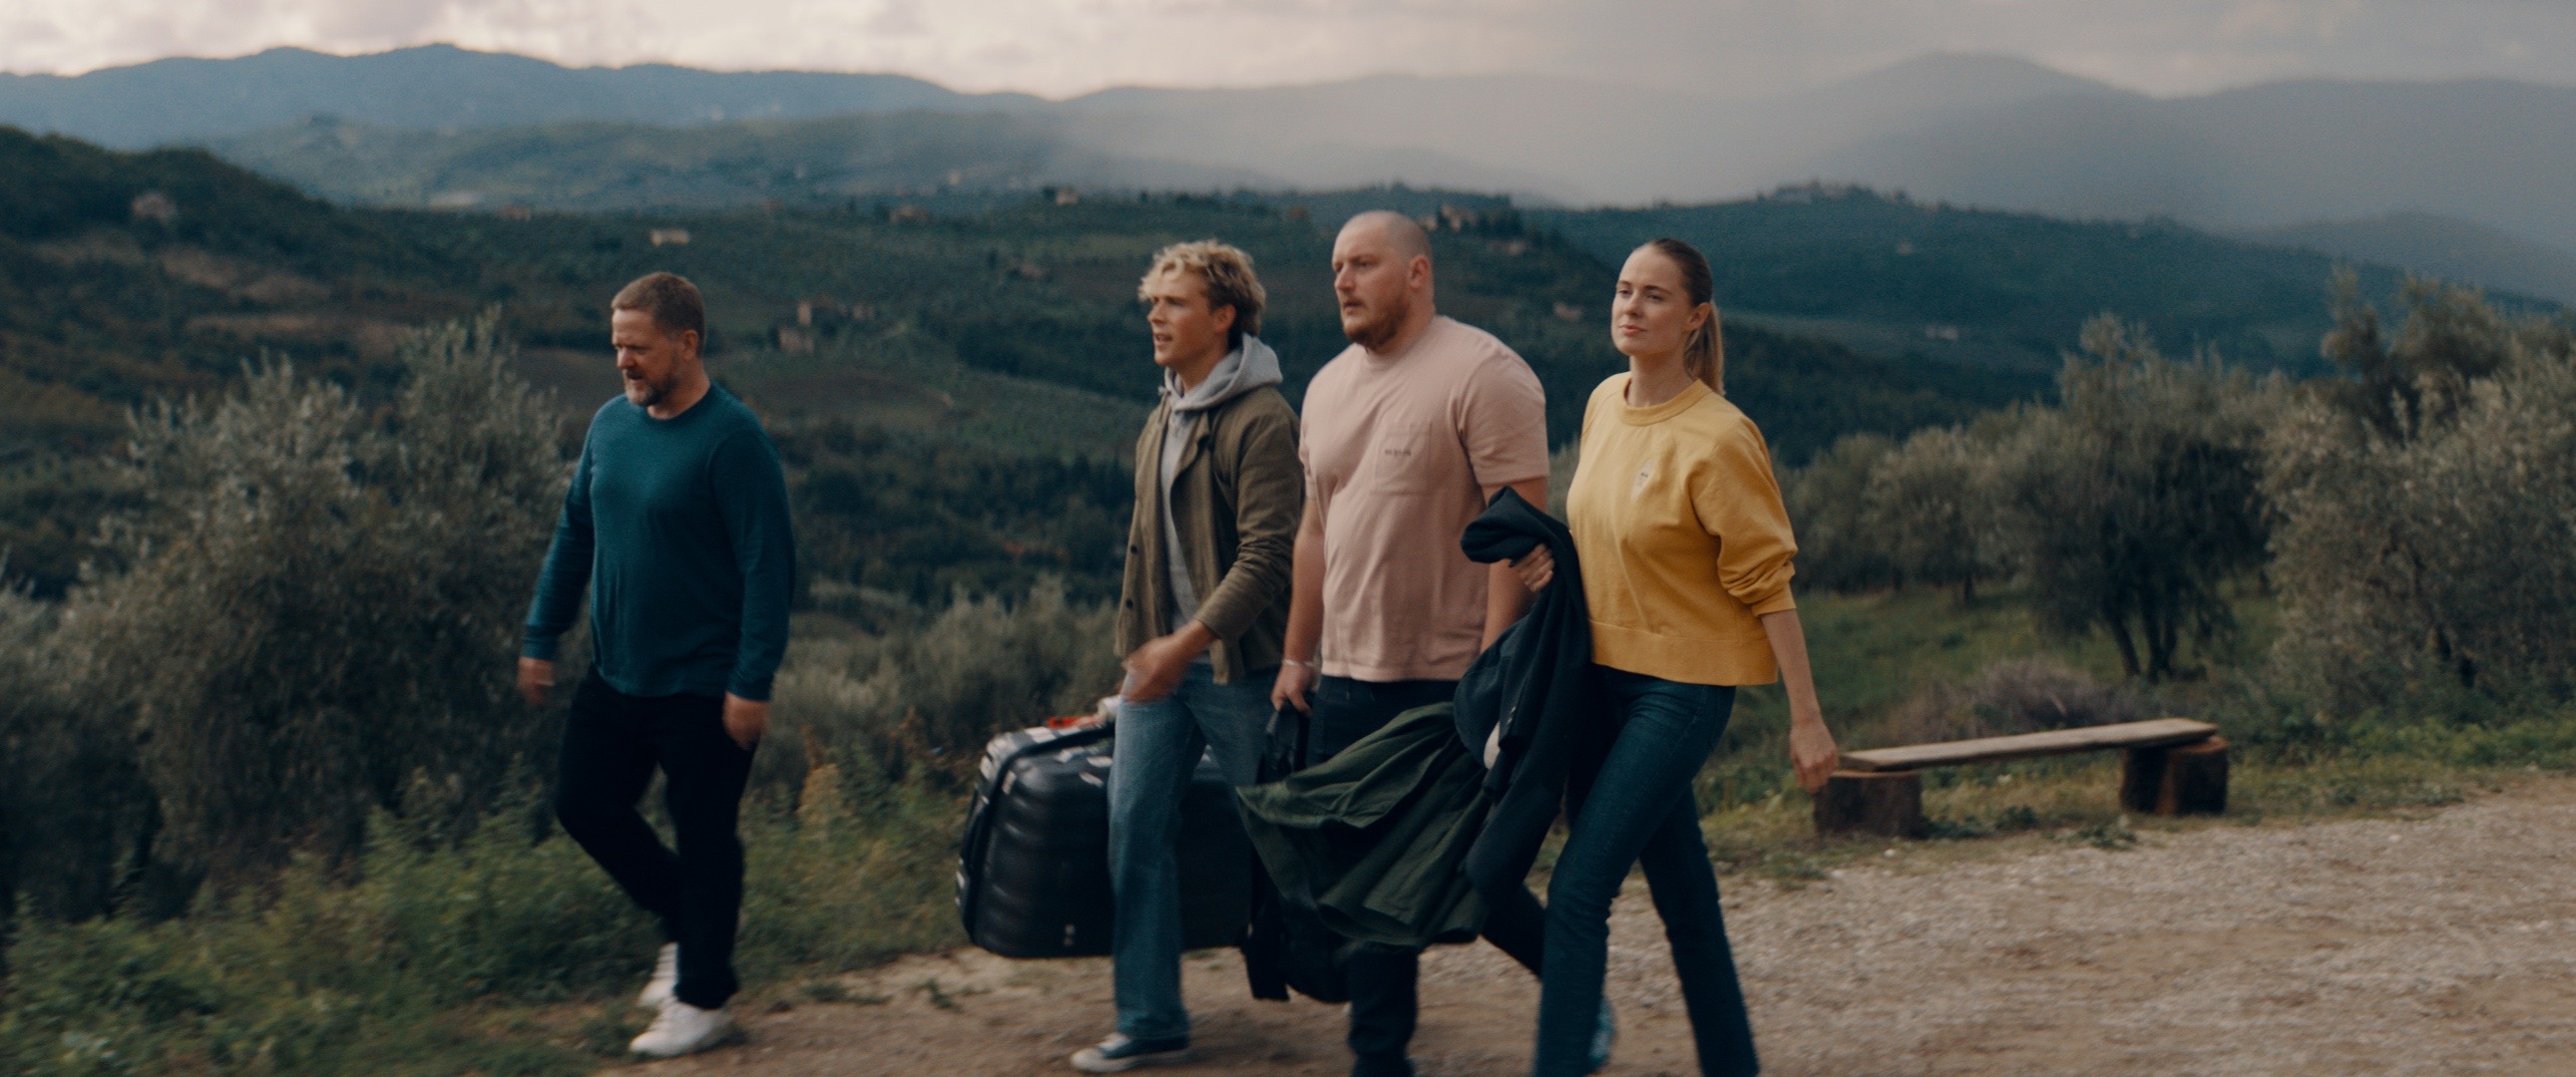 ¿Es la Toscana una historia real? ¿La película de Netflix está basada en personas reales? 2